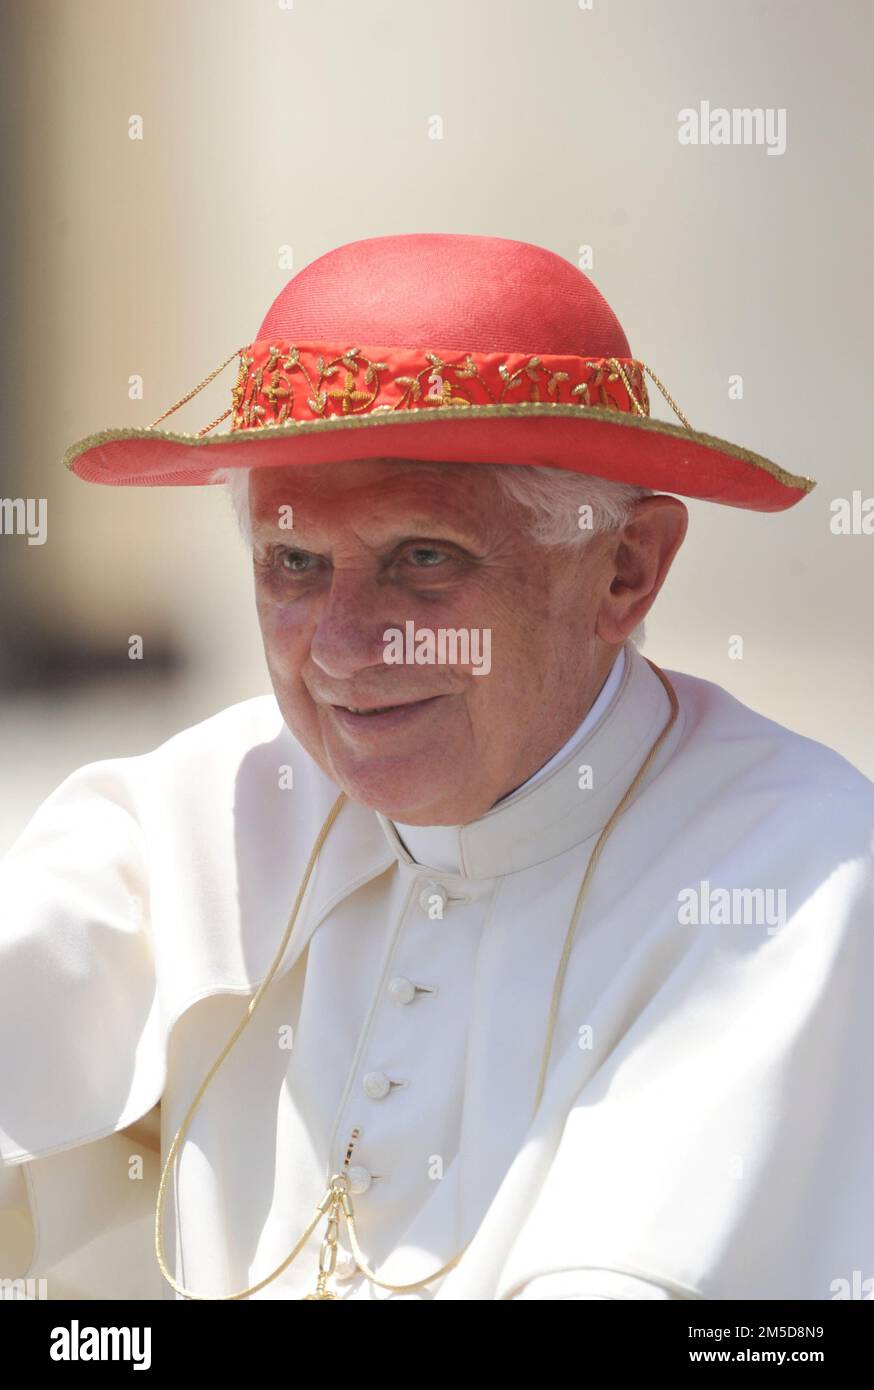 File photo - giorno soleggiato a Roma: Papa Benedetto XVI indossa il cappello  rosso di Saturno , che prende il nome dal pianeta ad anello Saturno, al  termine dell'udienza generale settimanale a